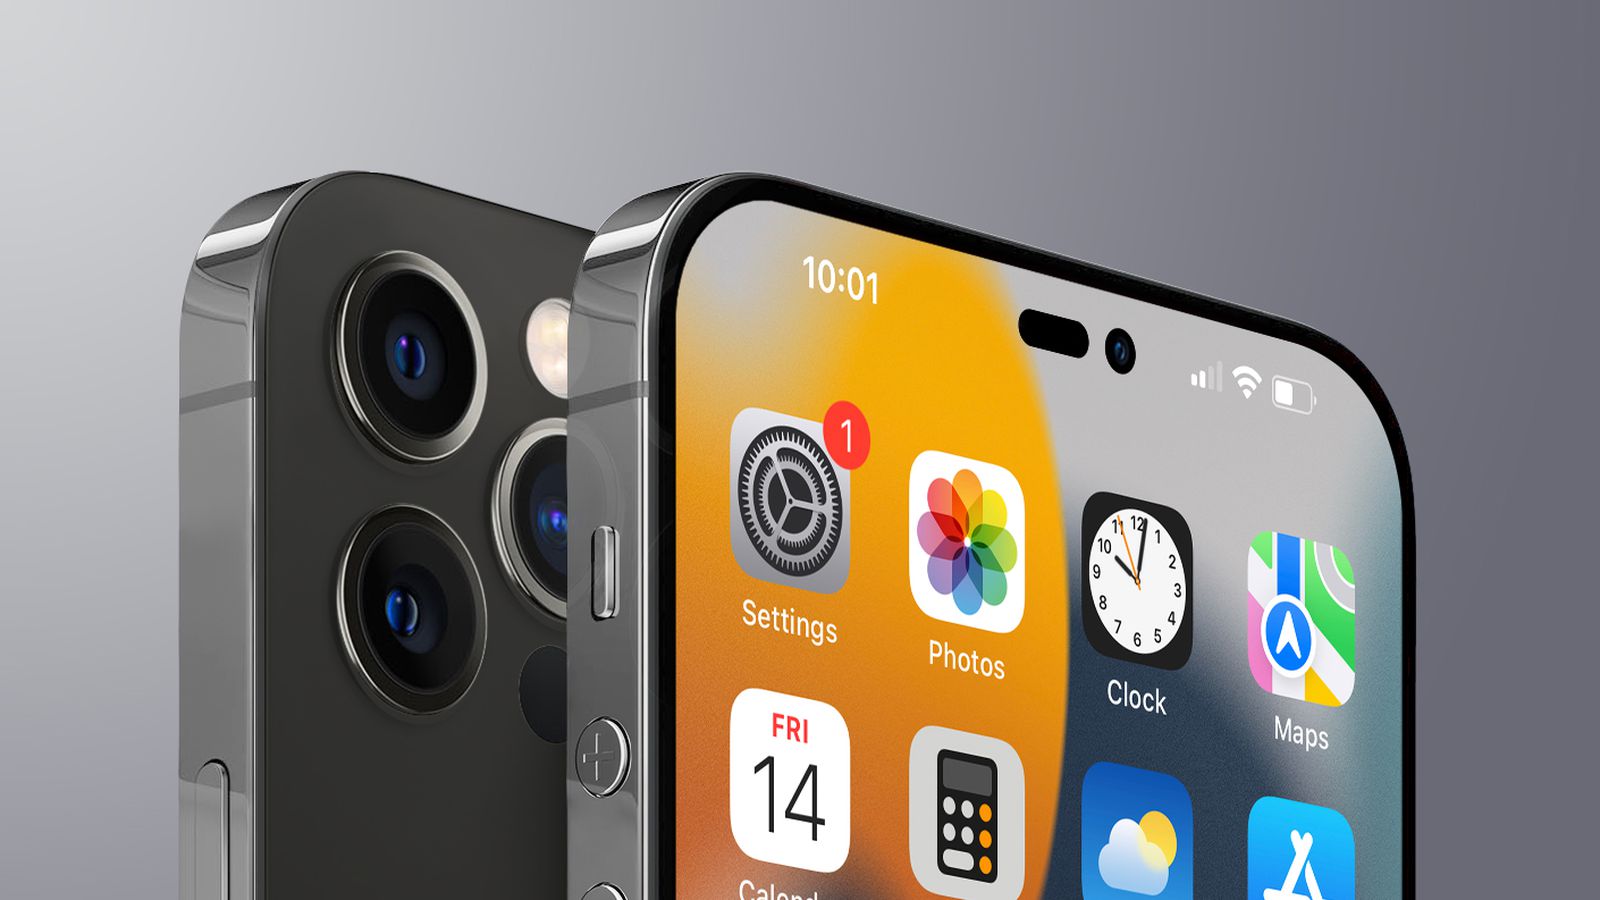 iPhone 14 với camera trước nâng cấp sẽ cho phép bạn chụp ảnh selfie chất lượng tốt hơn, sắc nét hơn. Thiết kế tinh tế, kiểu dáng mới mẻ, máy có nhiều cải tiến vượt bậc so với các sản phẩm trước đó. Hứa hẹn sẽ là một trong những điện thoại hot nhất của năm sau.